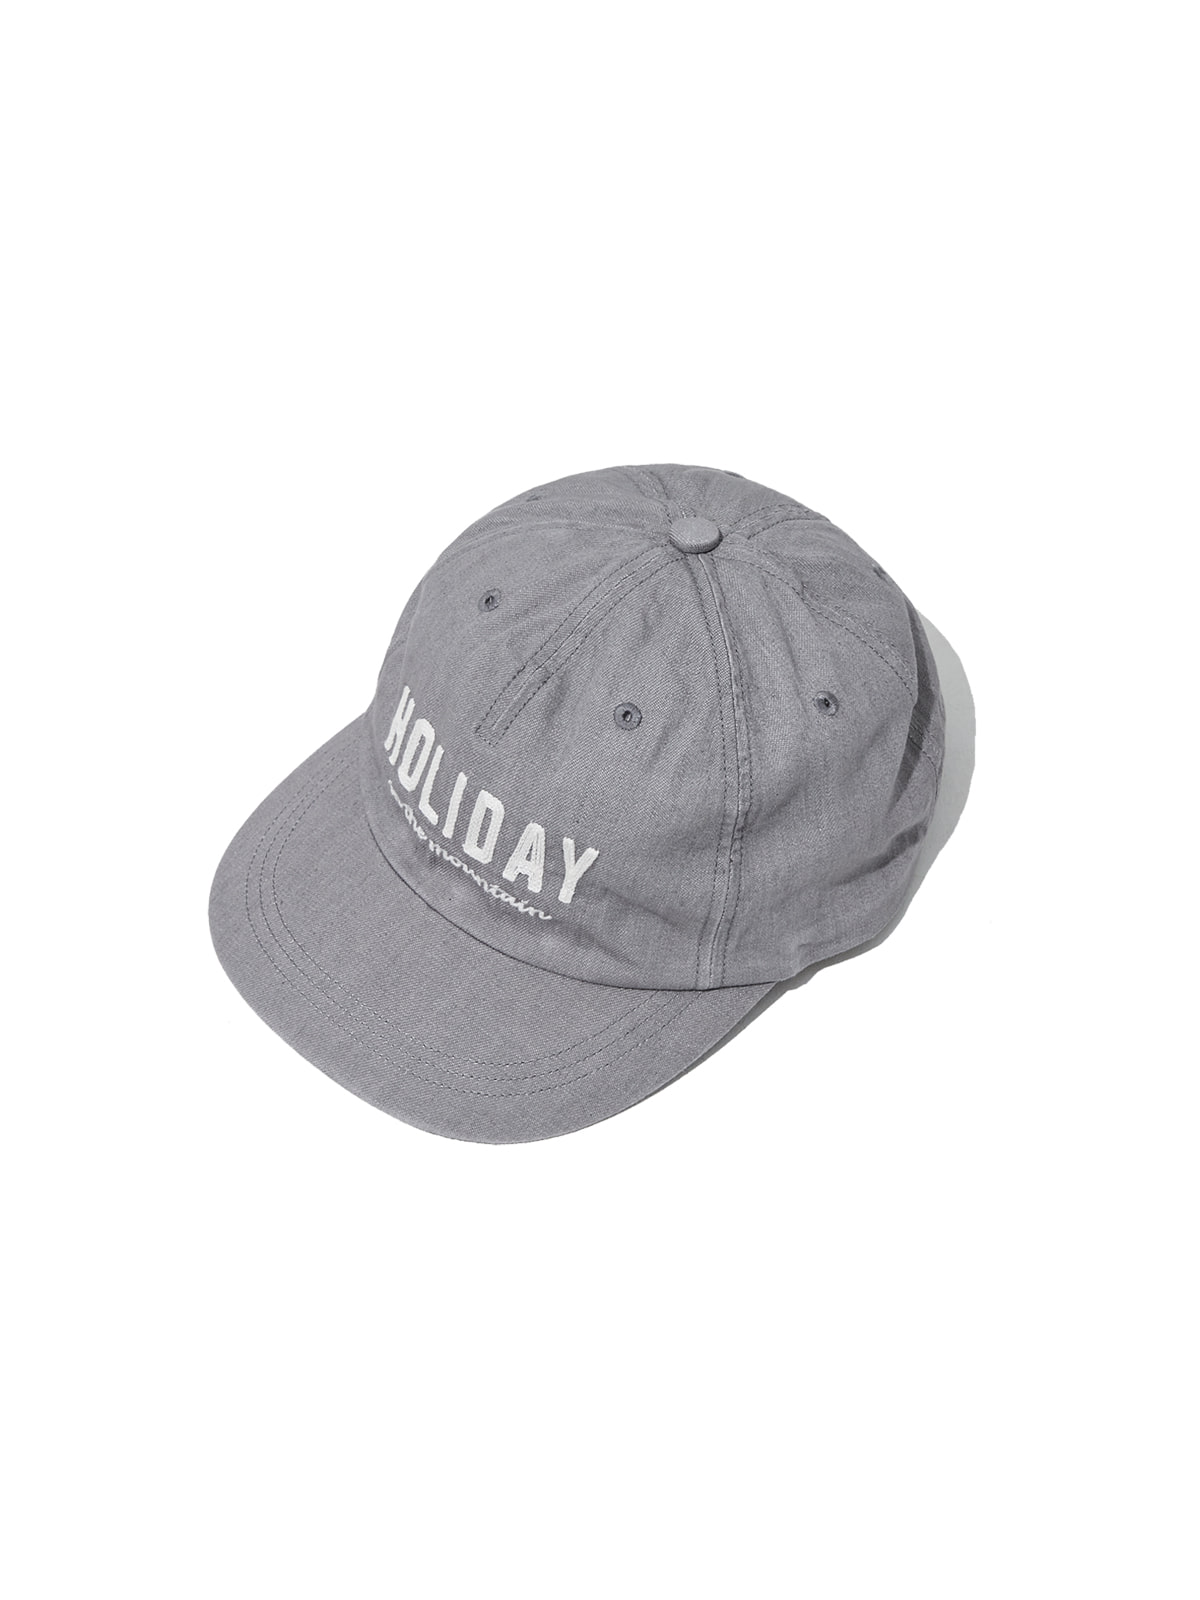 HOLIDAY CAP (GRAY)